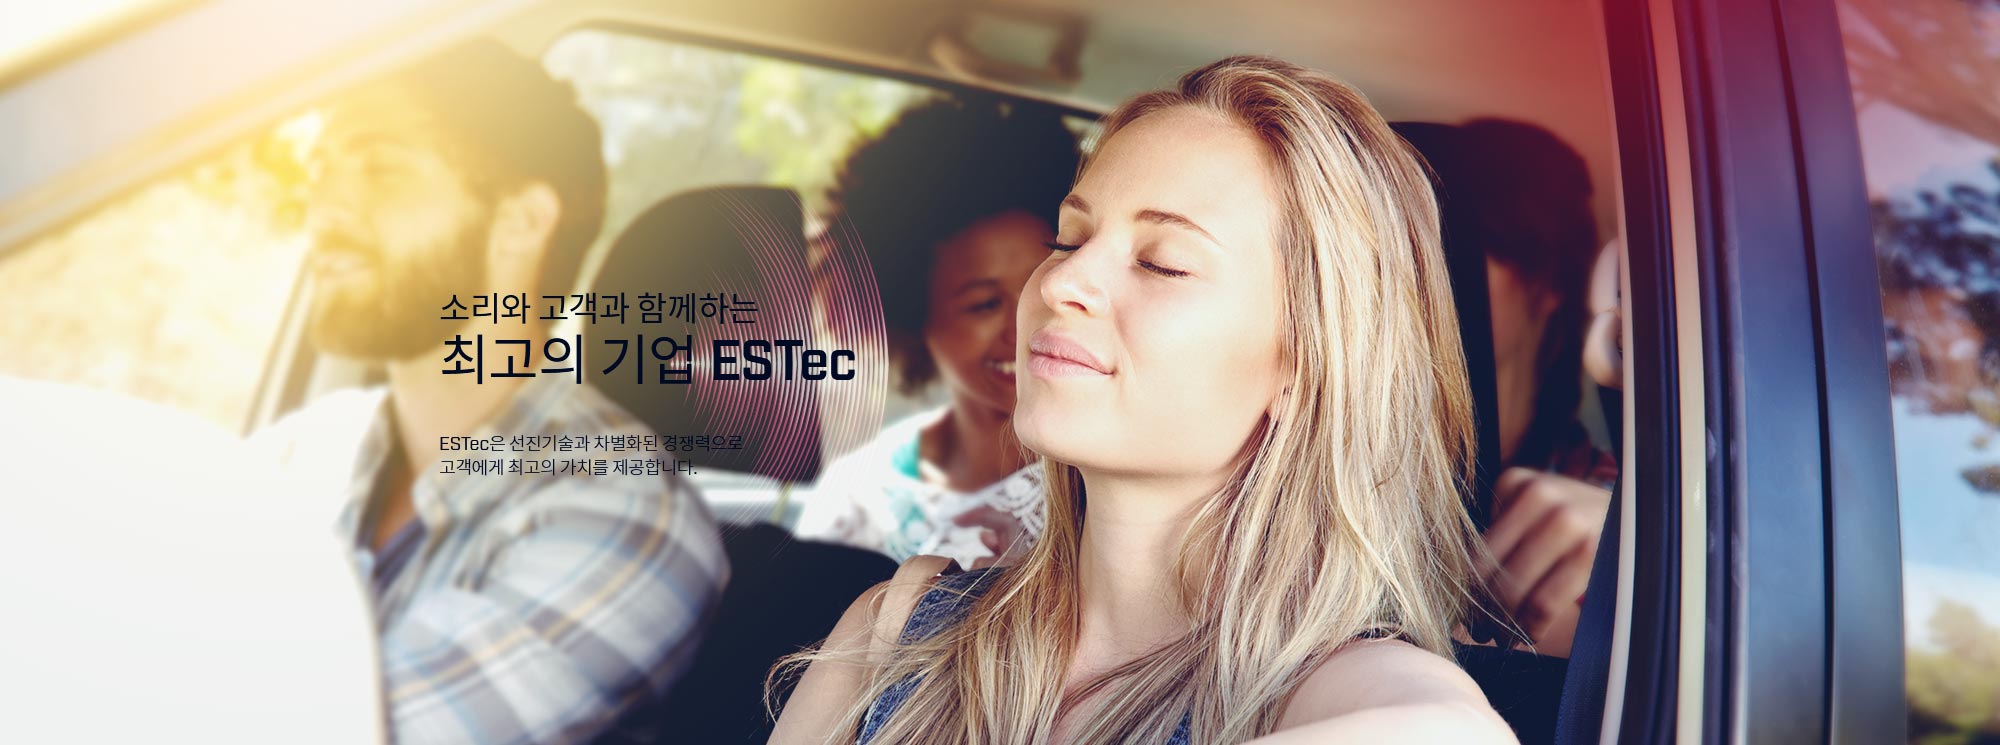 소리와 고객과 함께하는 최고의 기업 ESTec ESTec은 선진기술과 차별화된 경쟁력으로 고객에게 최고의 가치를 제공합니다.